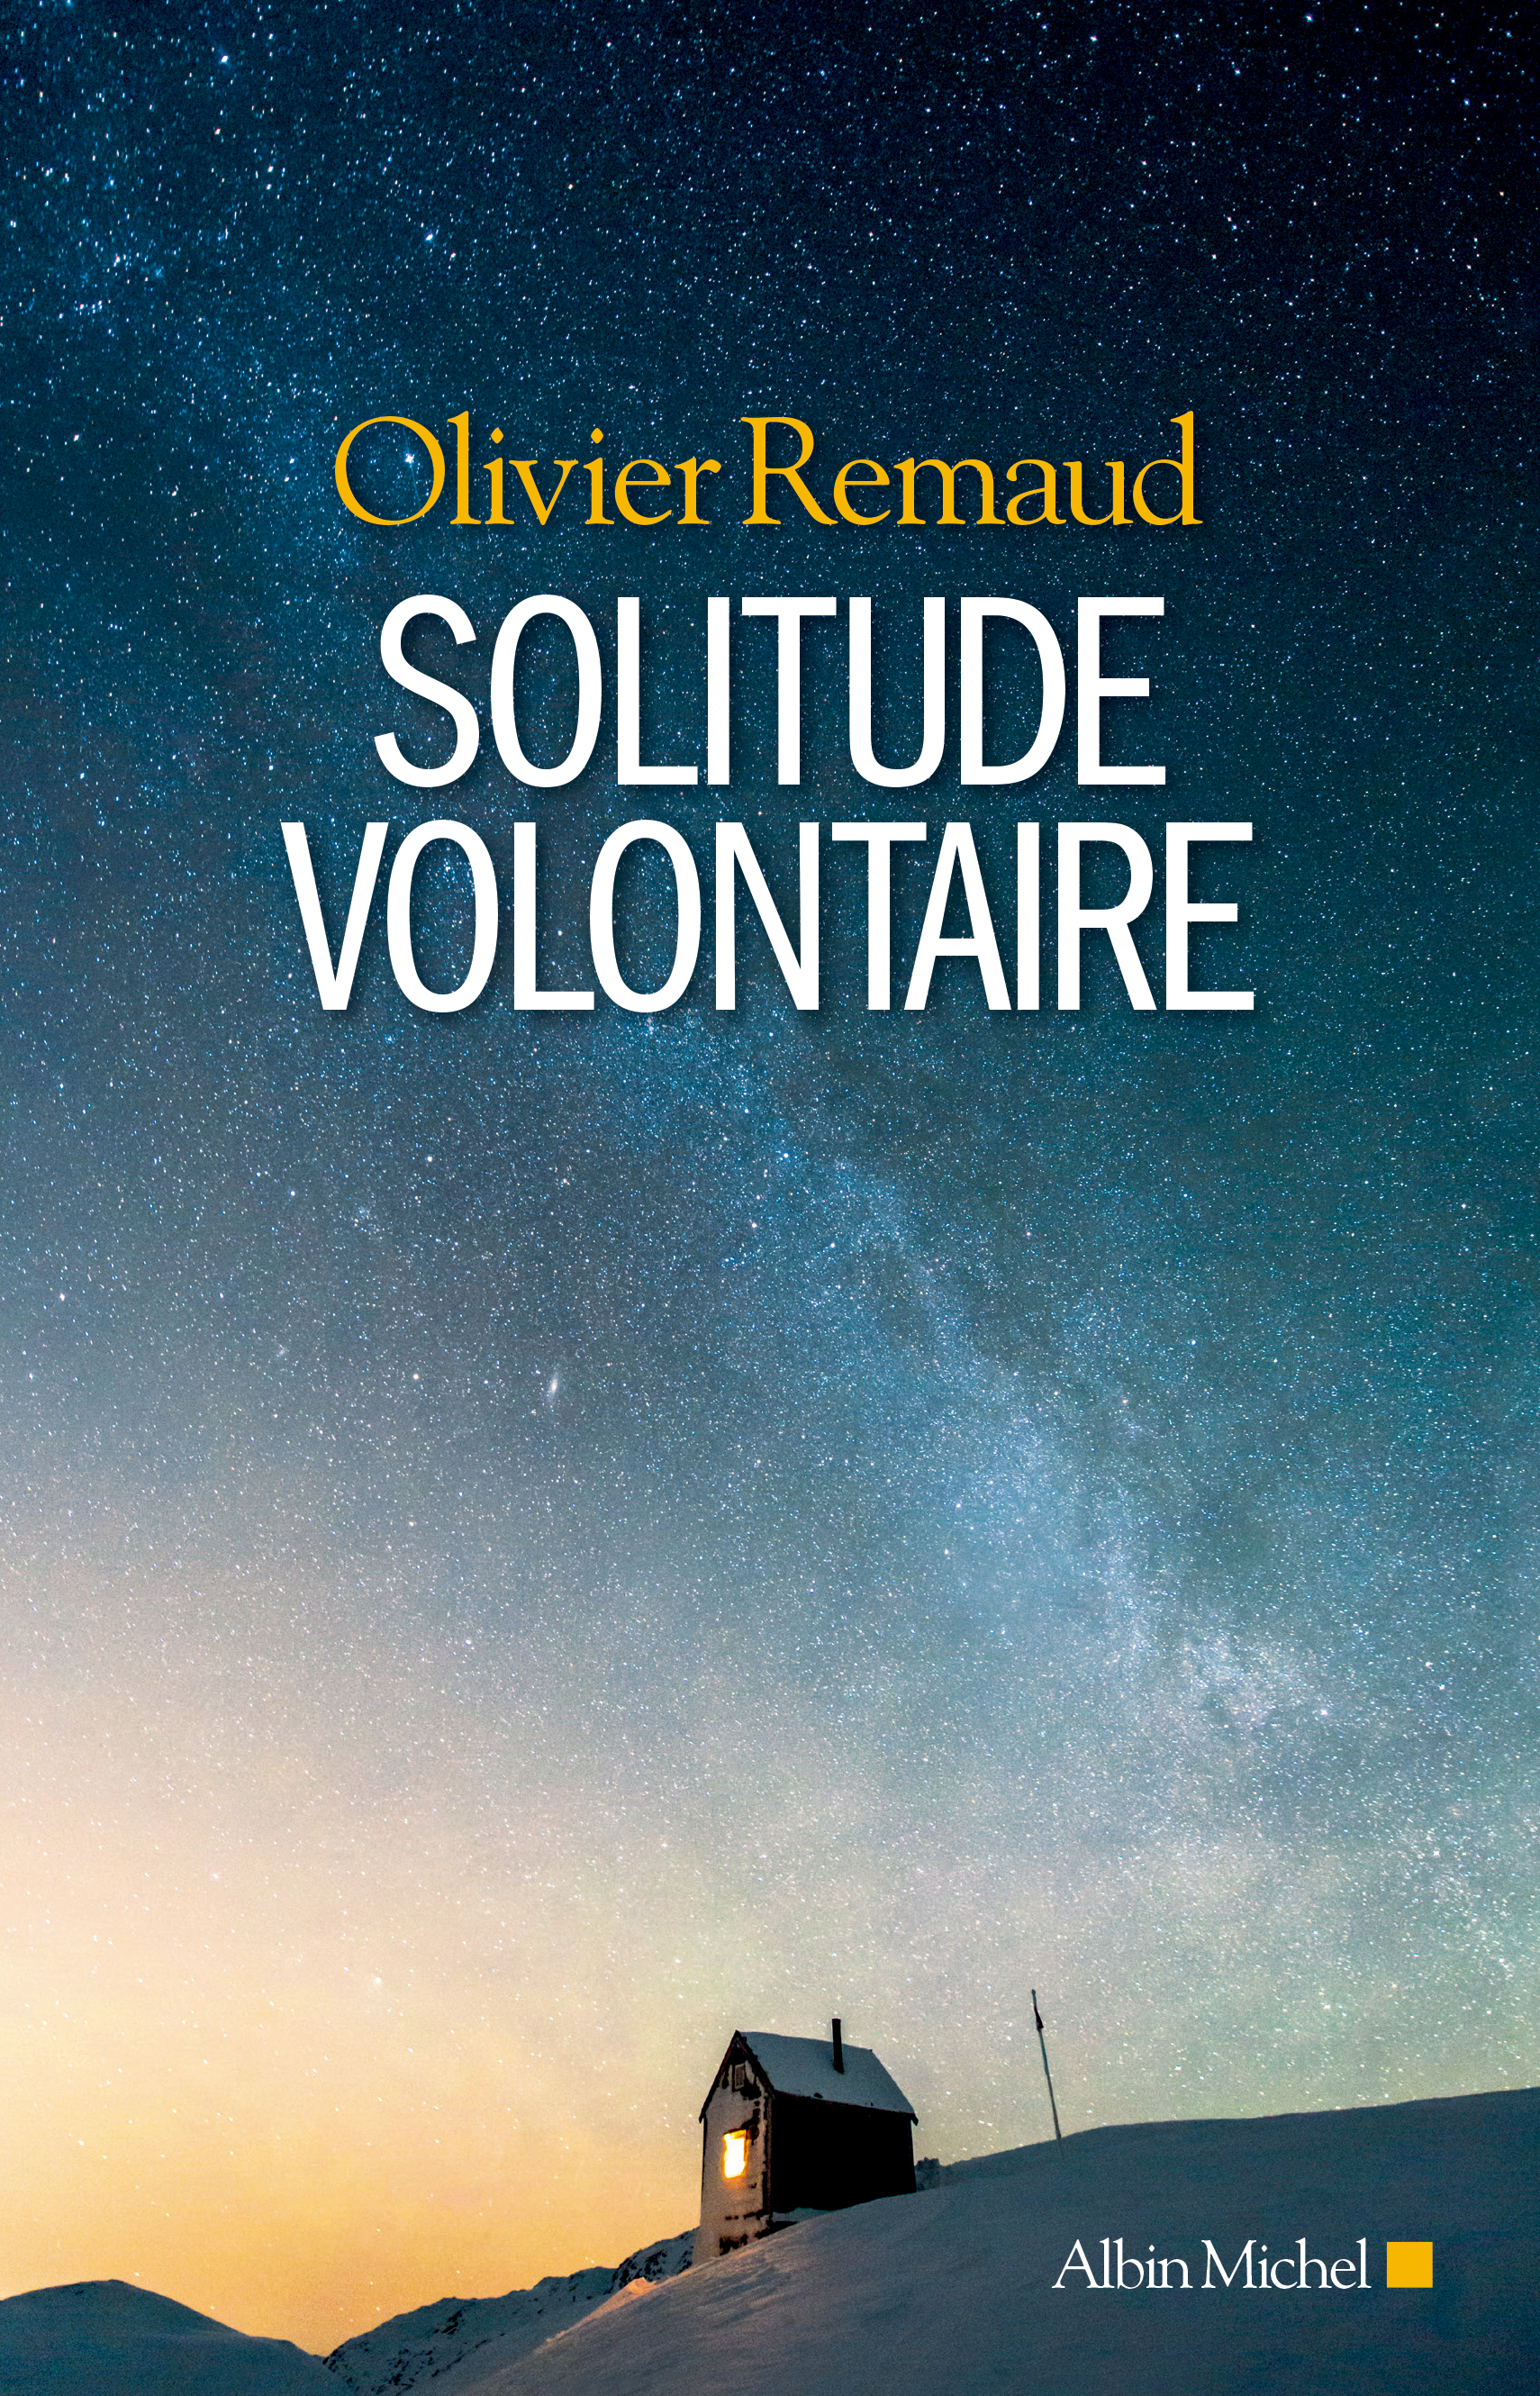 Couverture du livre Solitude volontaire